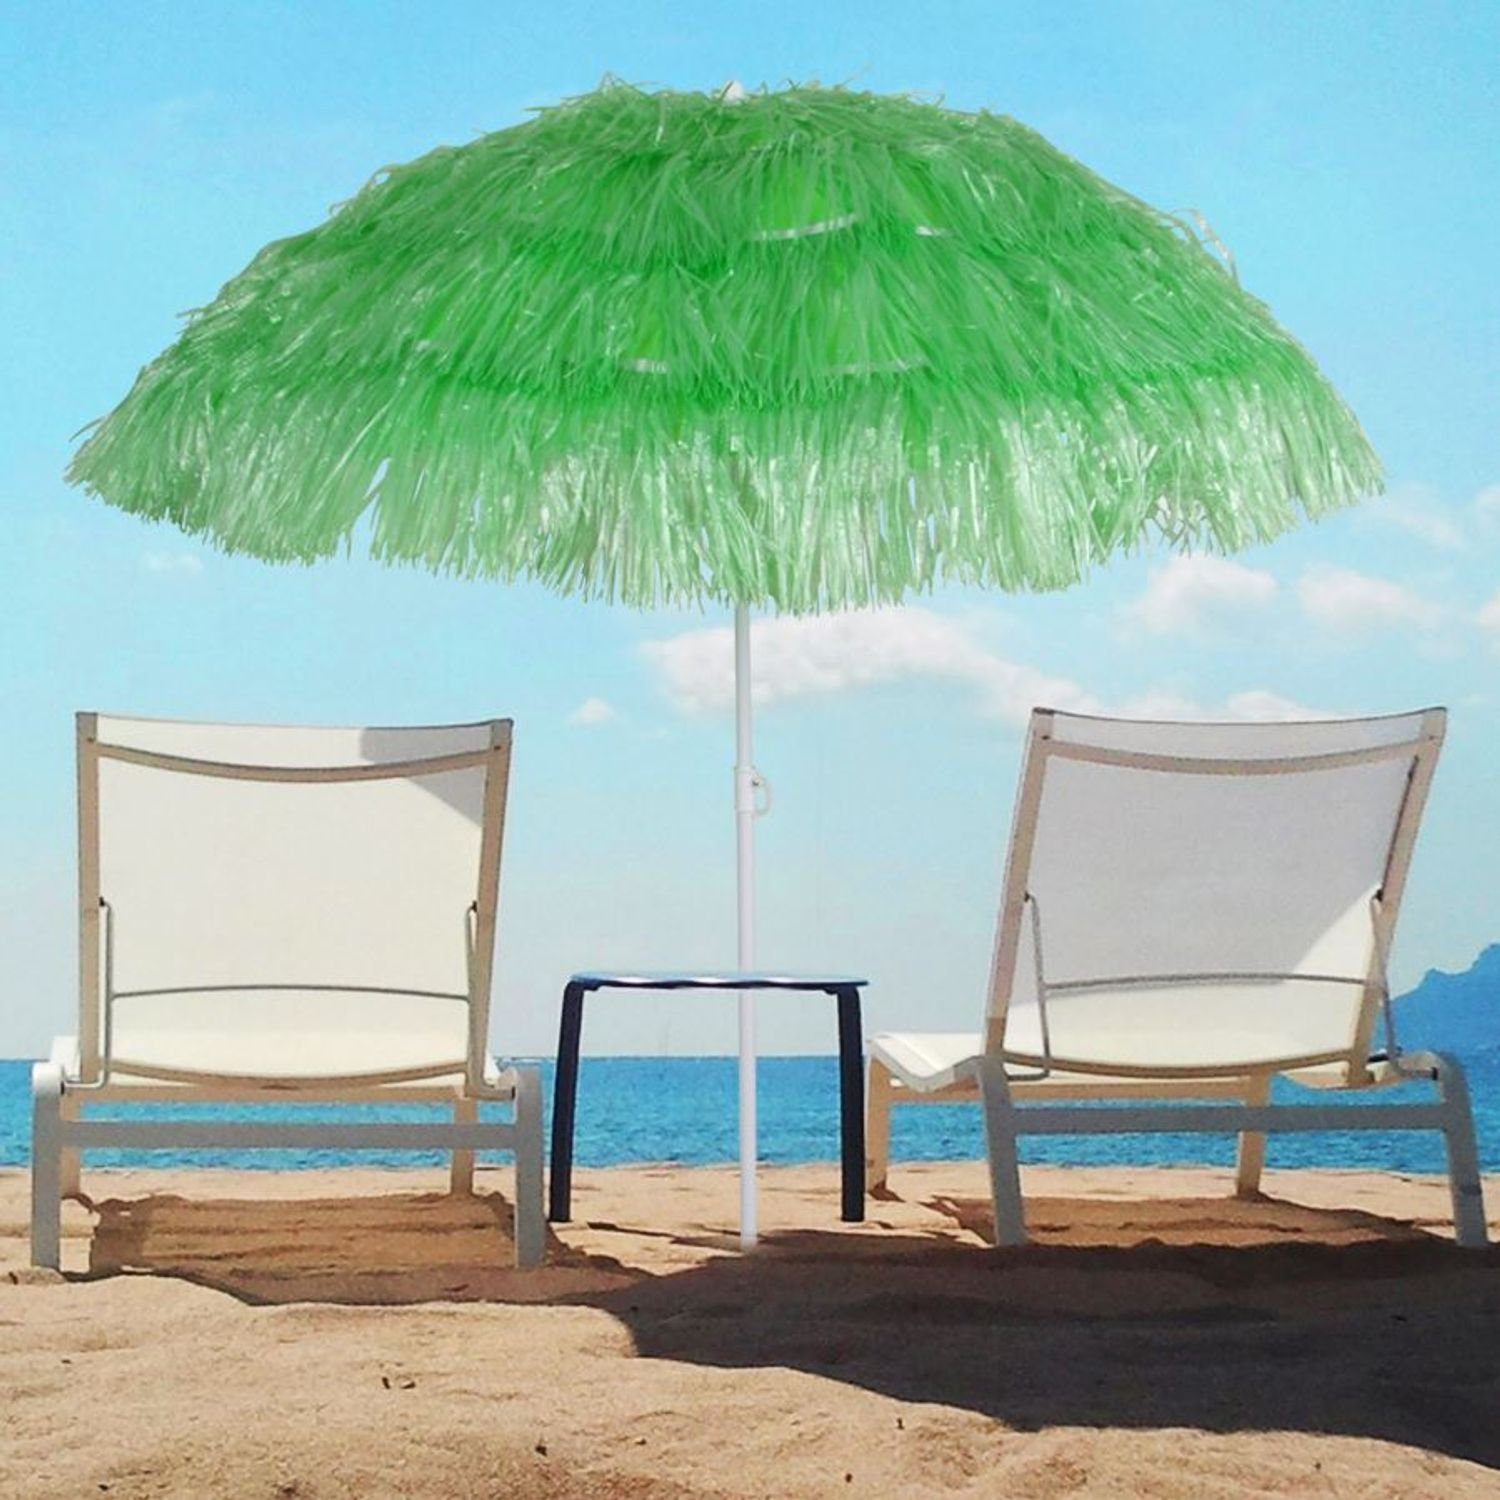 Sonnenschirm Strand Hawaii Fransen UV Schutz Erdspieß Knickbar Orange Gelb, Picknick & Strand, Freizeit